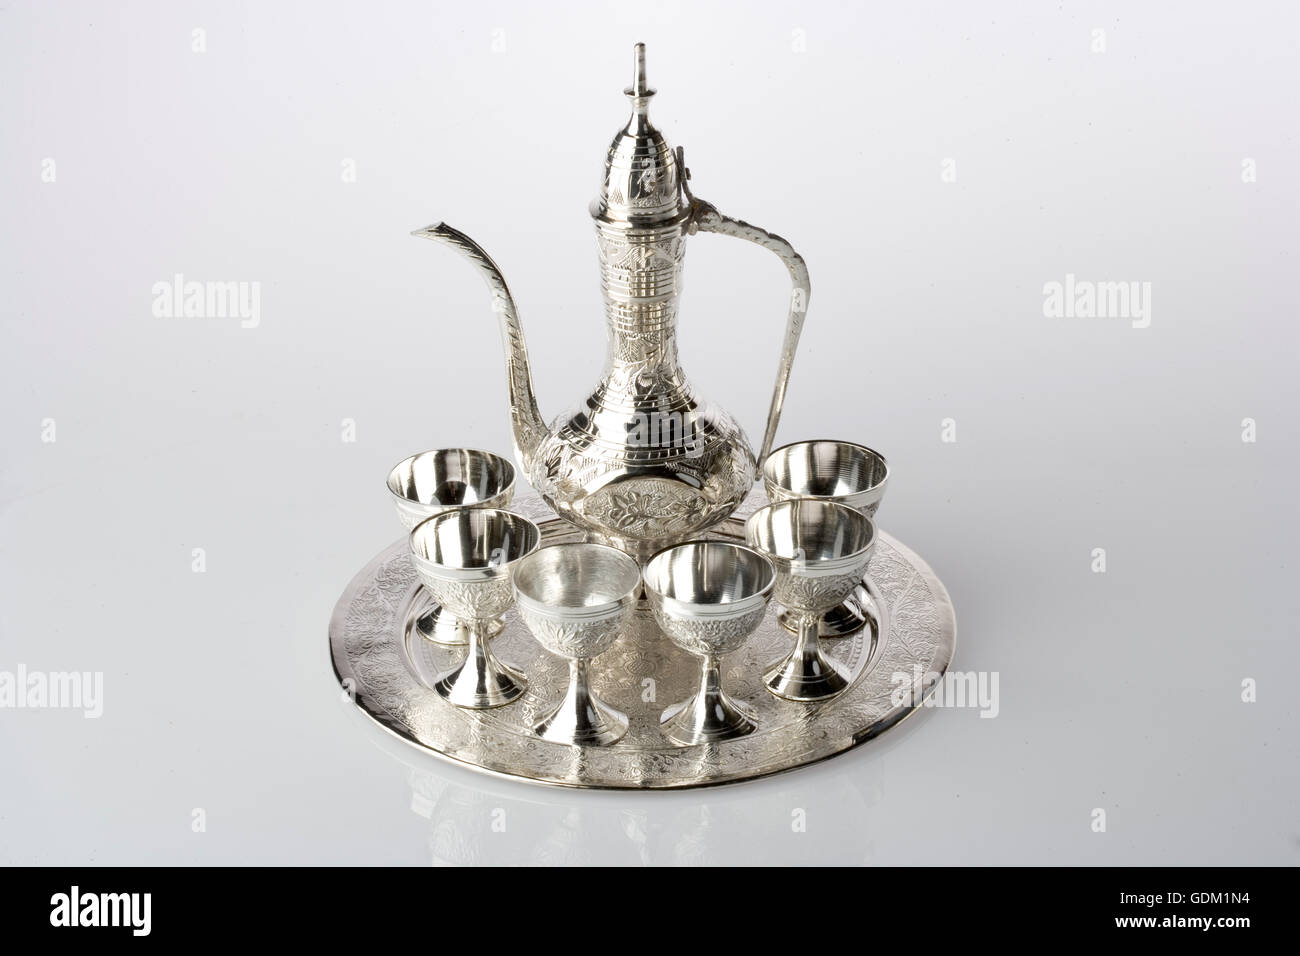 Image de Dallah pot avec fond blanc, DUBAÏ, ÉMIRATS ARABES UNIS. Banque D'Images